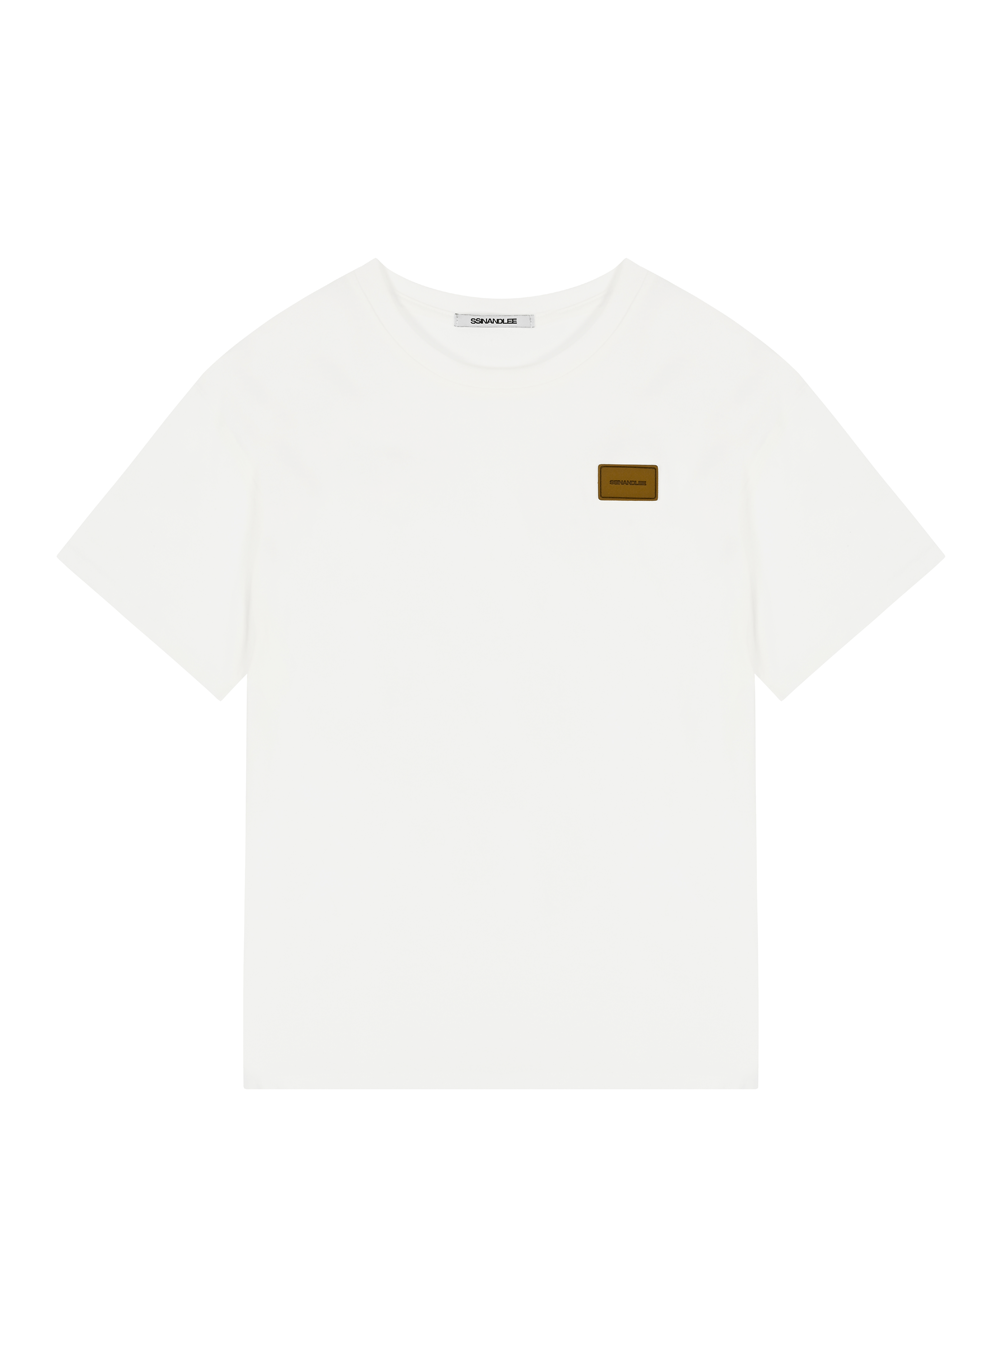 에센셜 레더 라벨 티셔츠 화이트Essential leather label T-shirt white